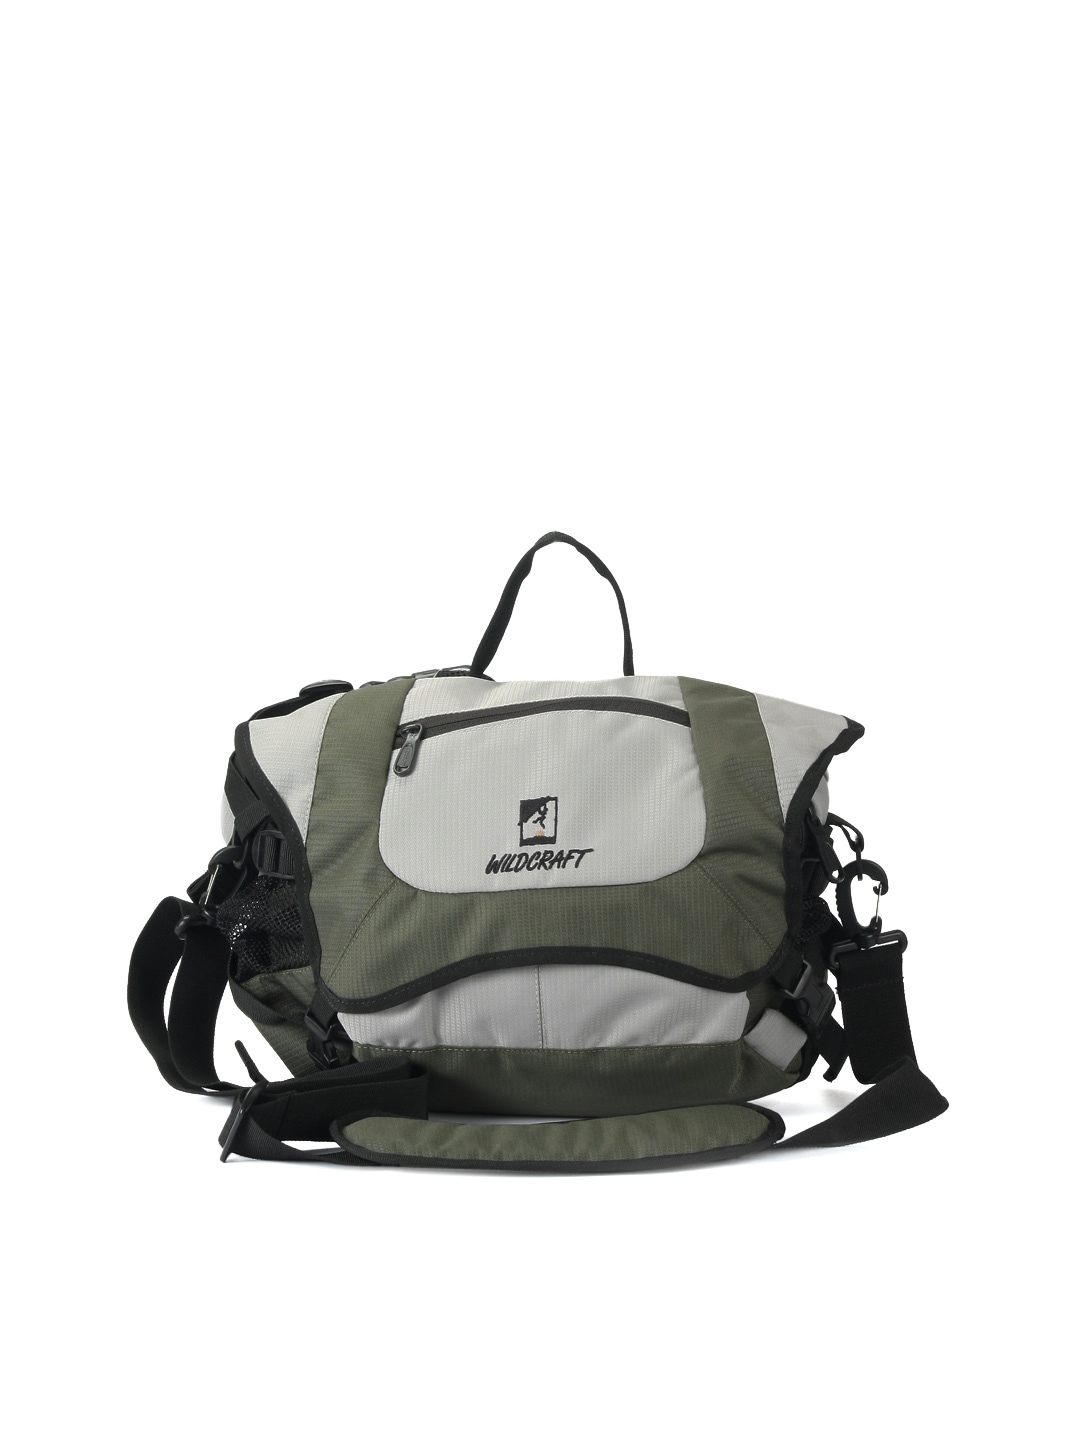 Wildcraft Unisex Gear for Life Green Waist Bag